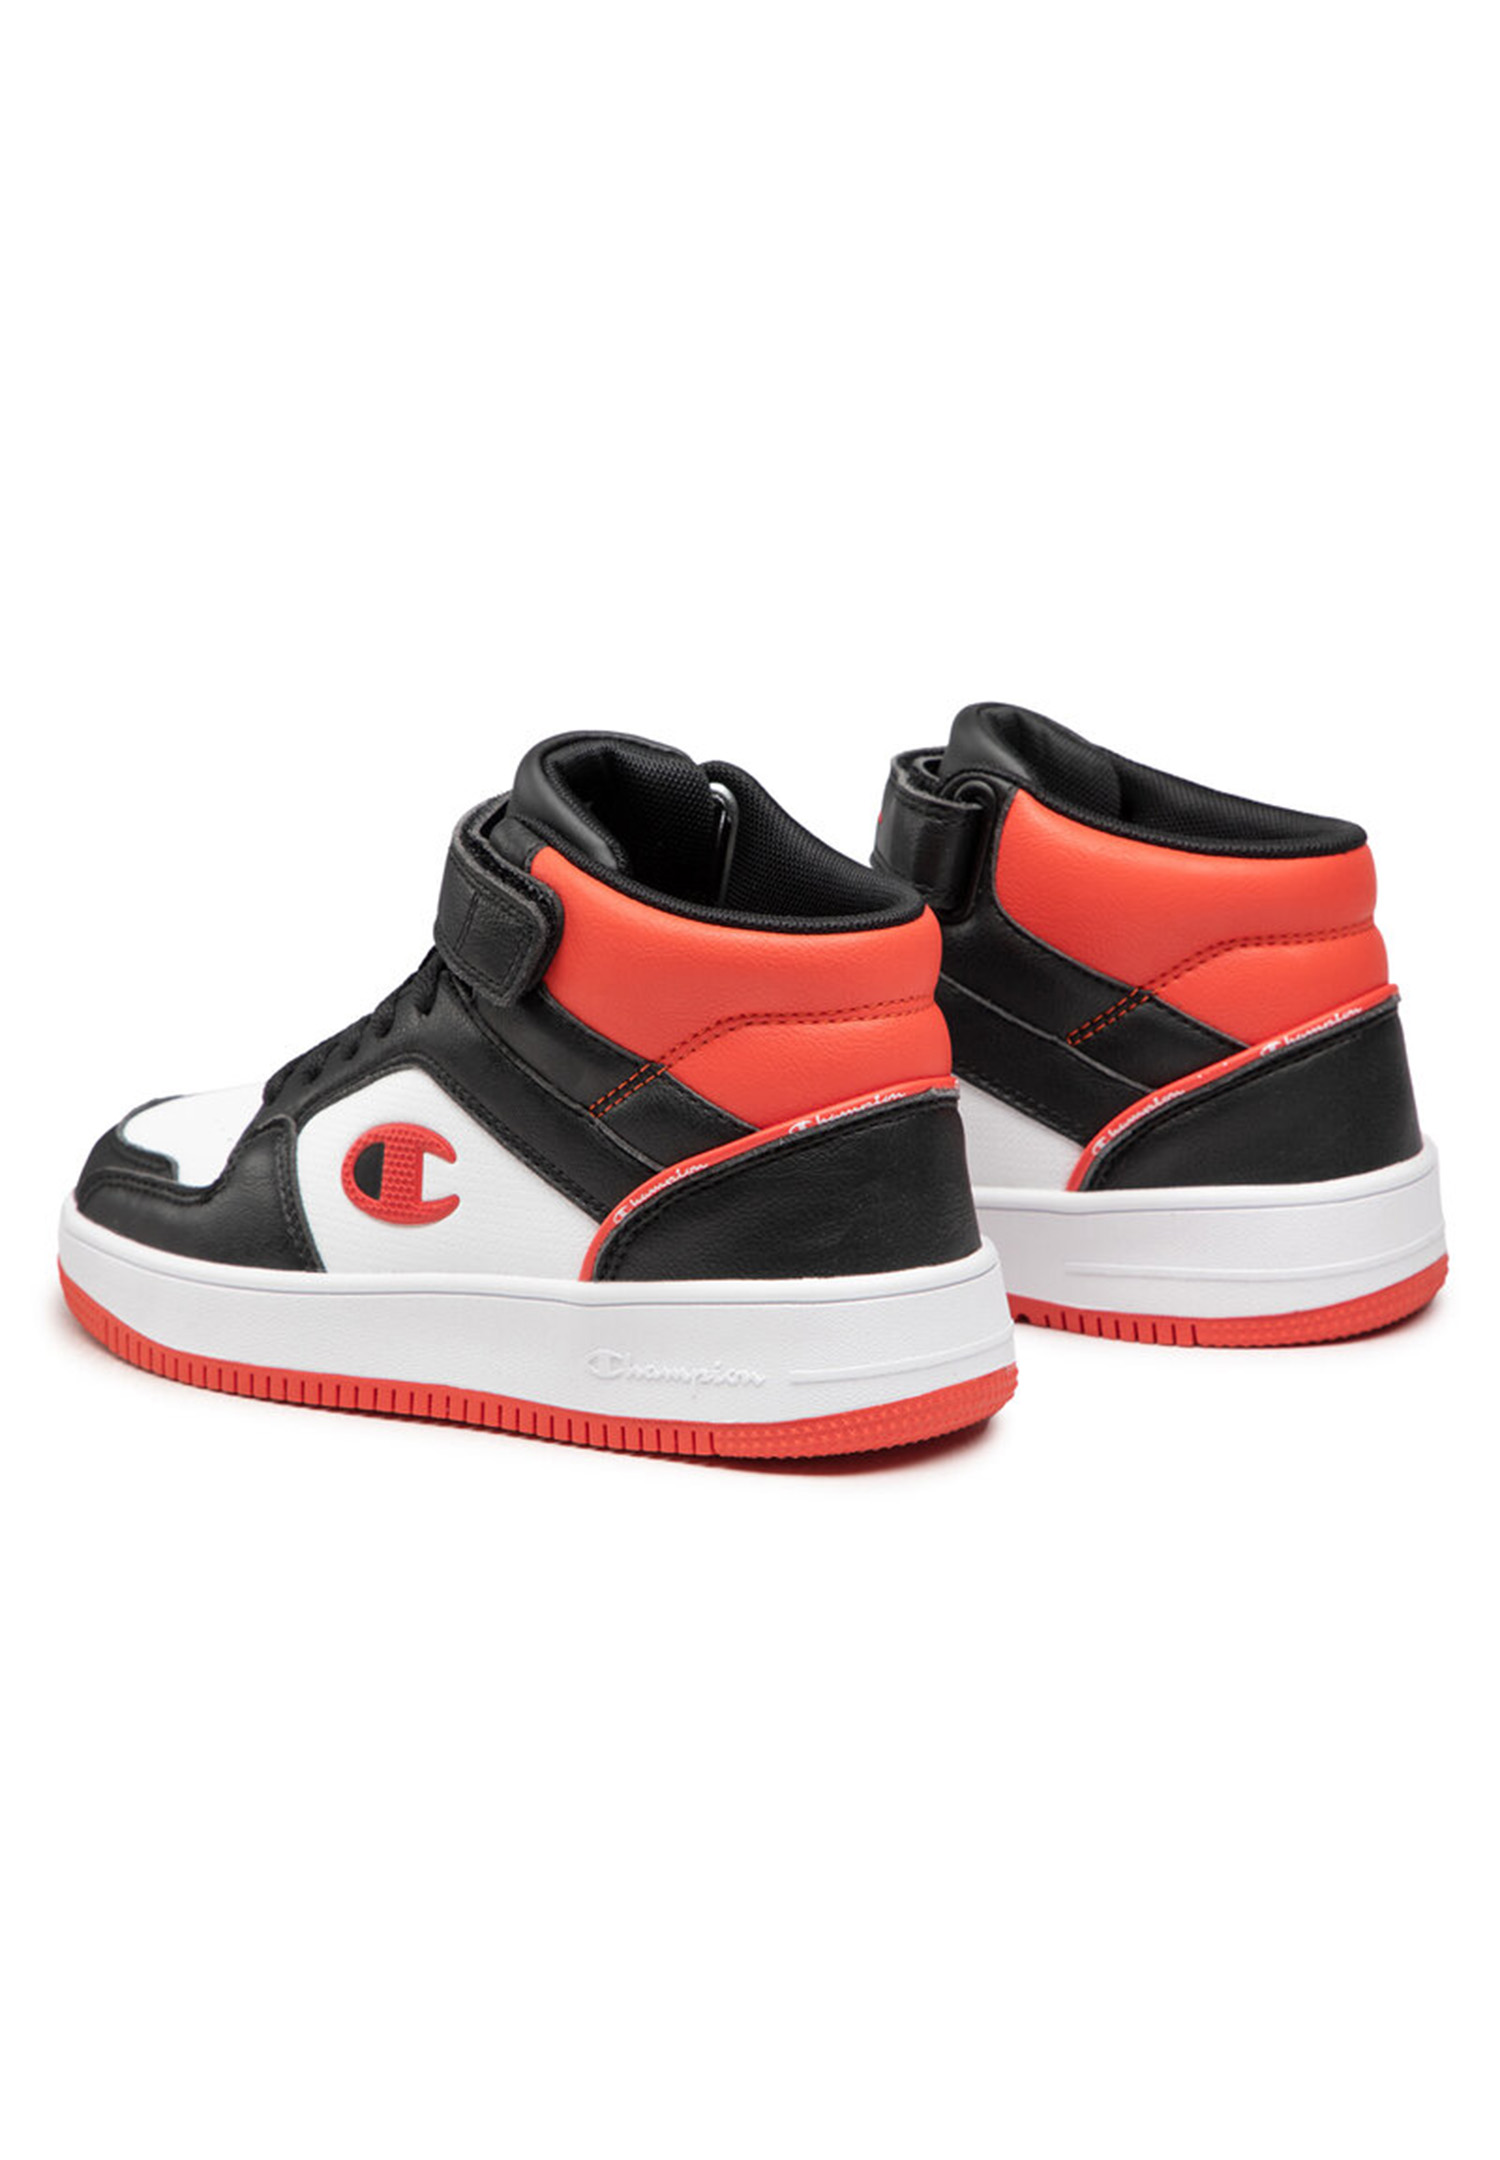 Champion REBOUND 2.0 MID B GS Kinder Sneaker S32413-CHA-KK003 schwarz /weiß/rot | Sneaker high